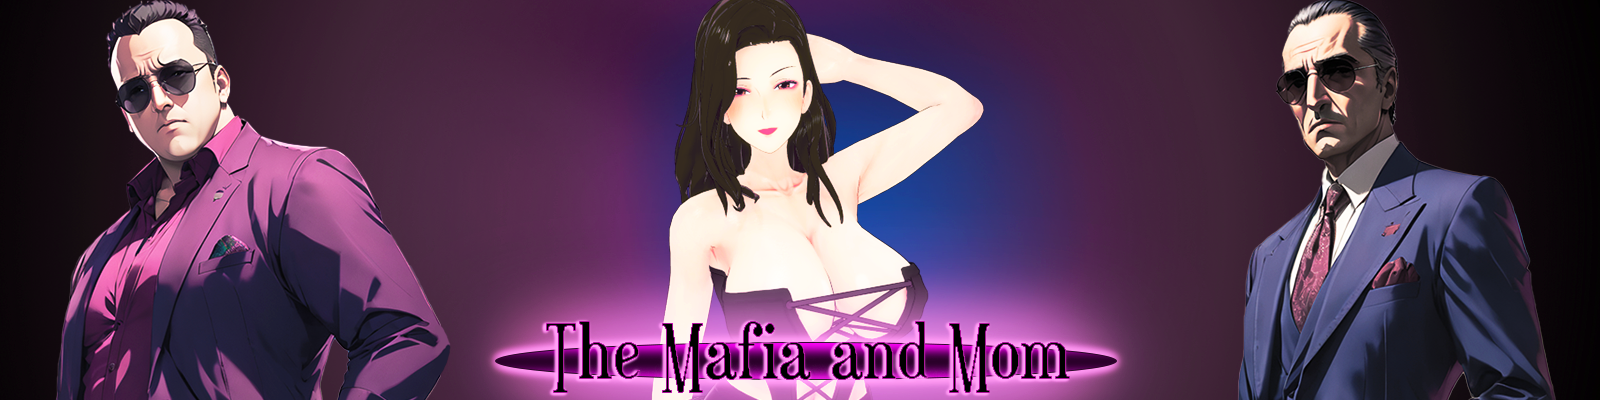 The Mafia and Mom